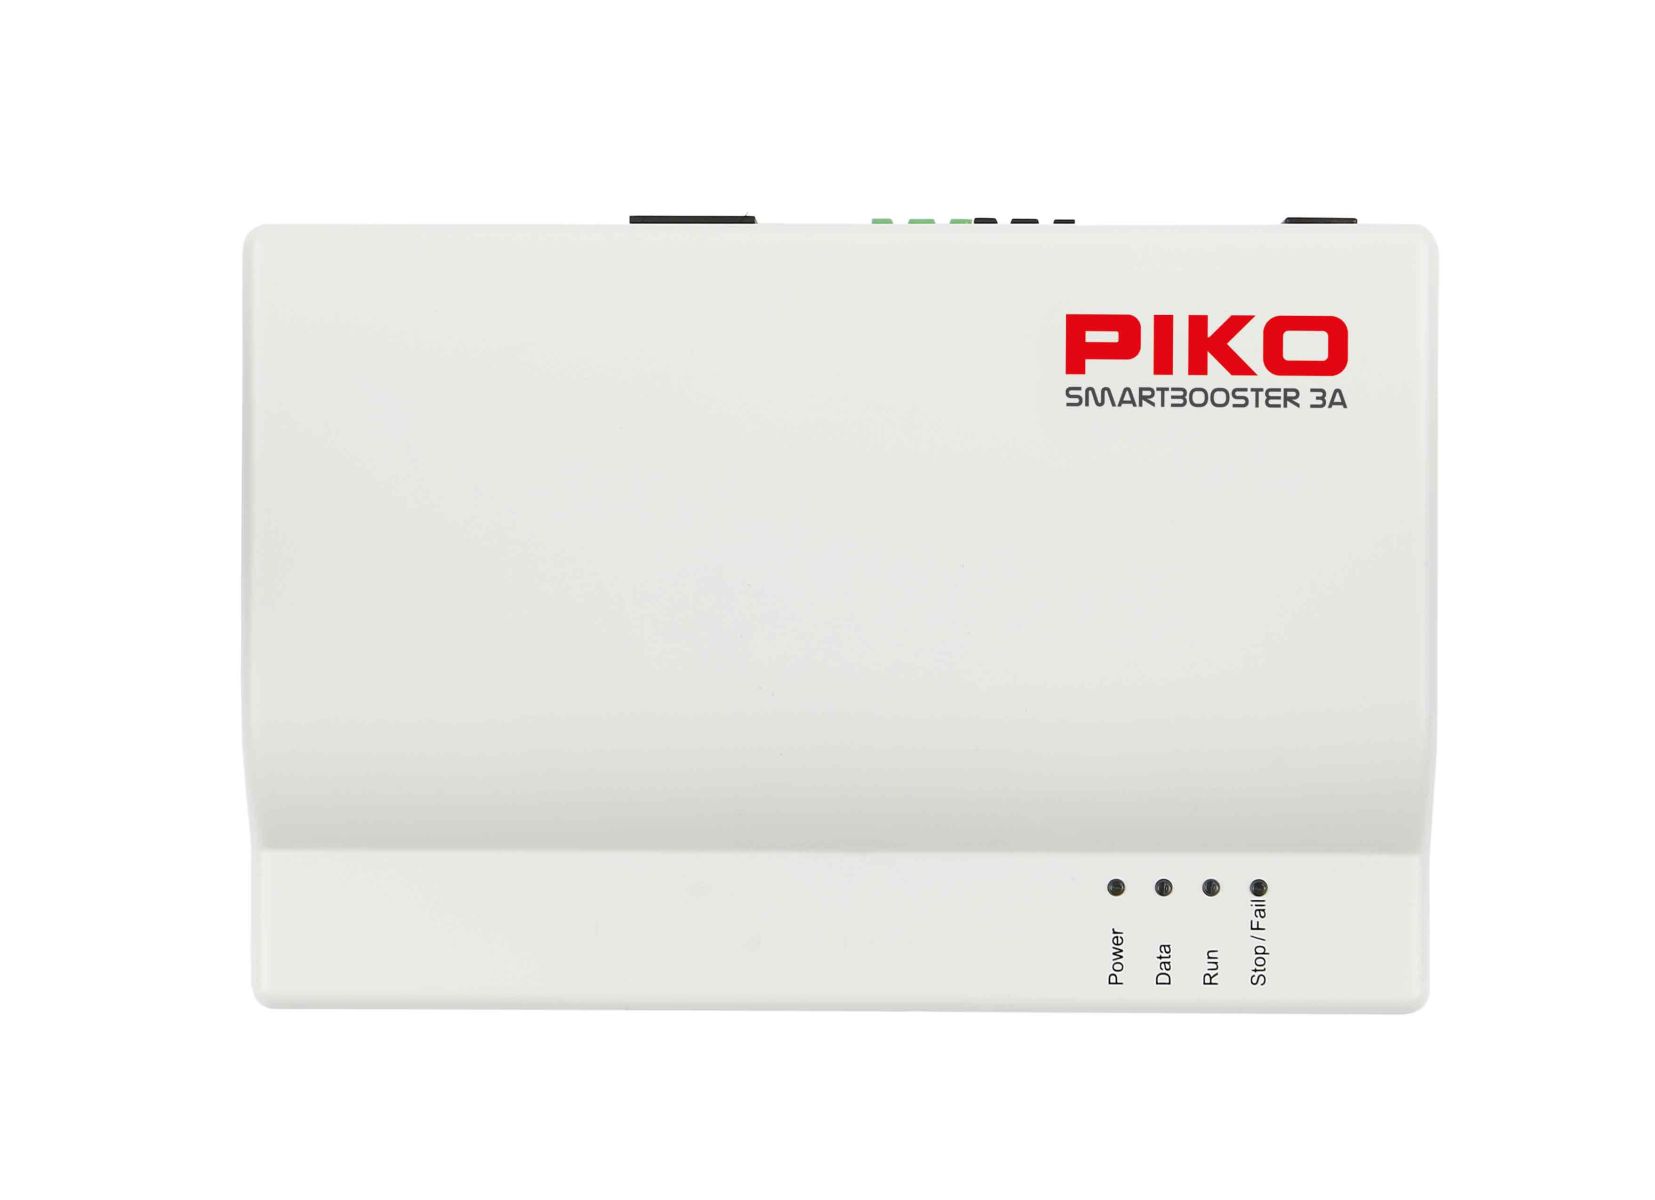 Piko 55827 - SmartControlwlan Booster 3A